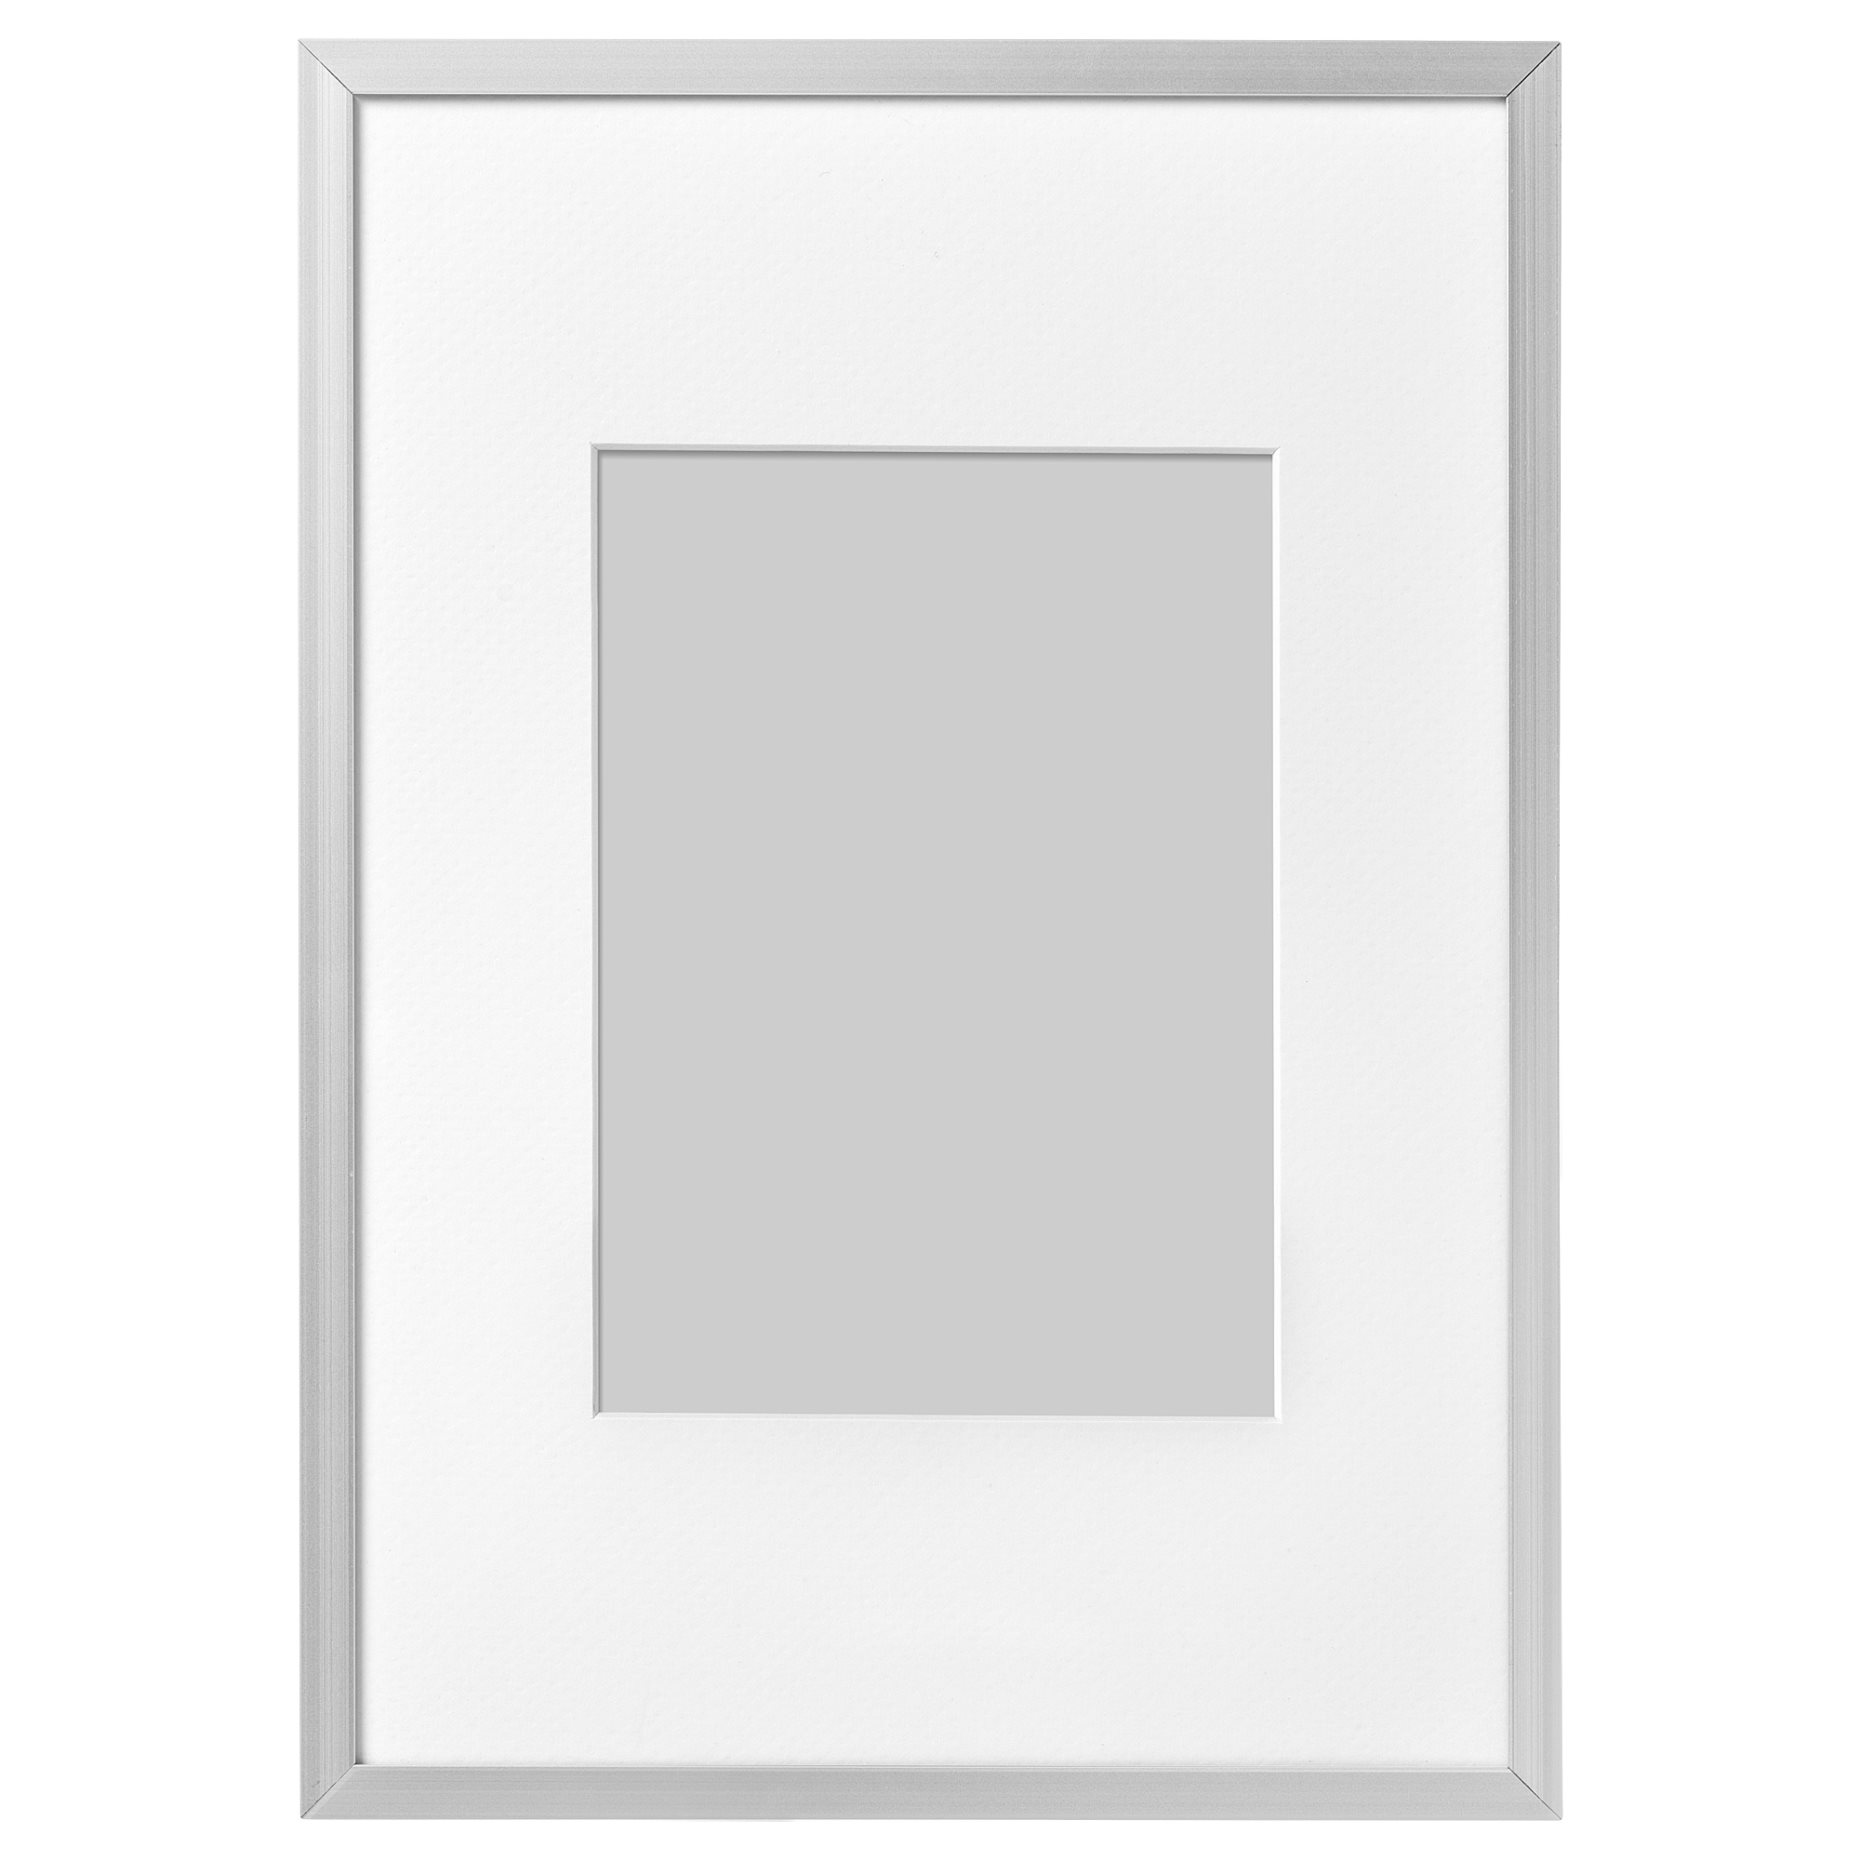 LOMVIKEN, frame, 21x30 cm, 703.143.04